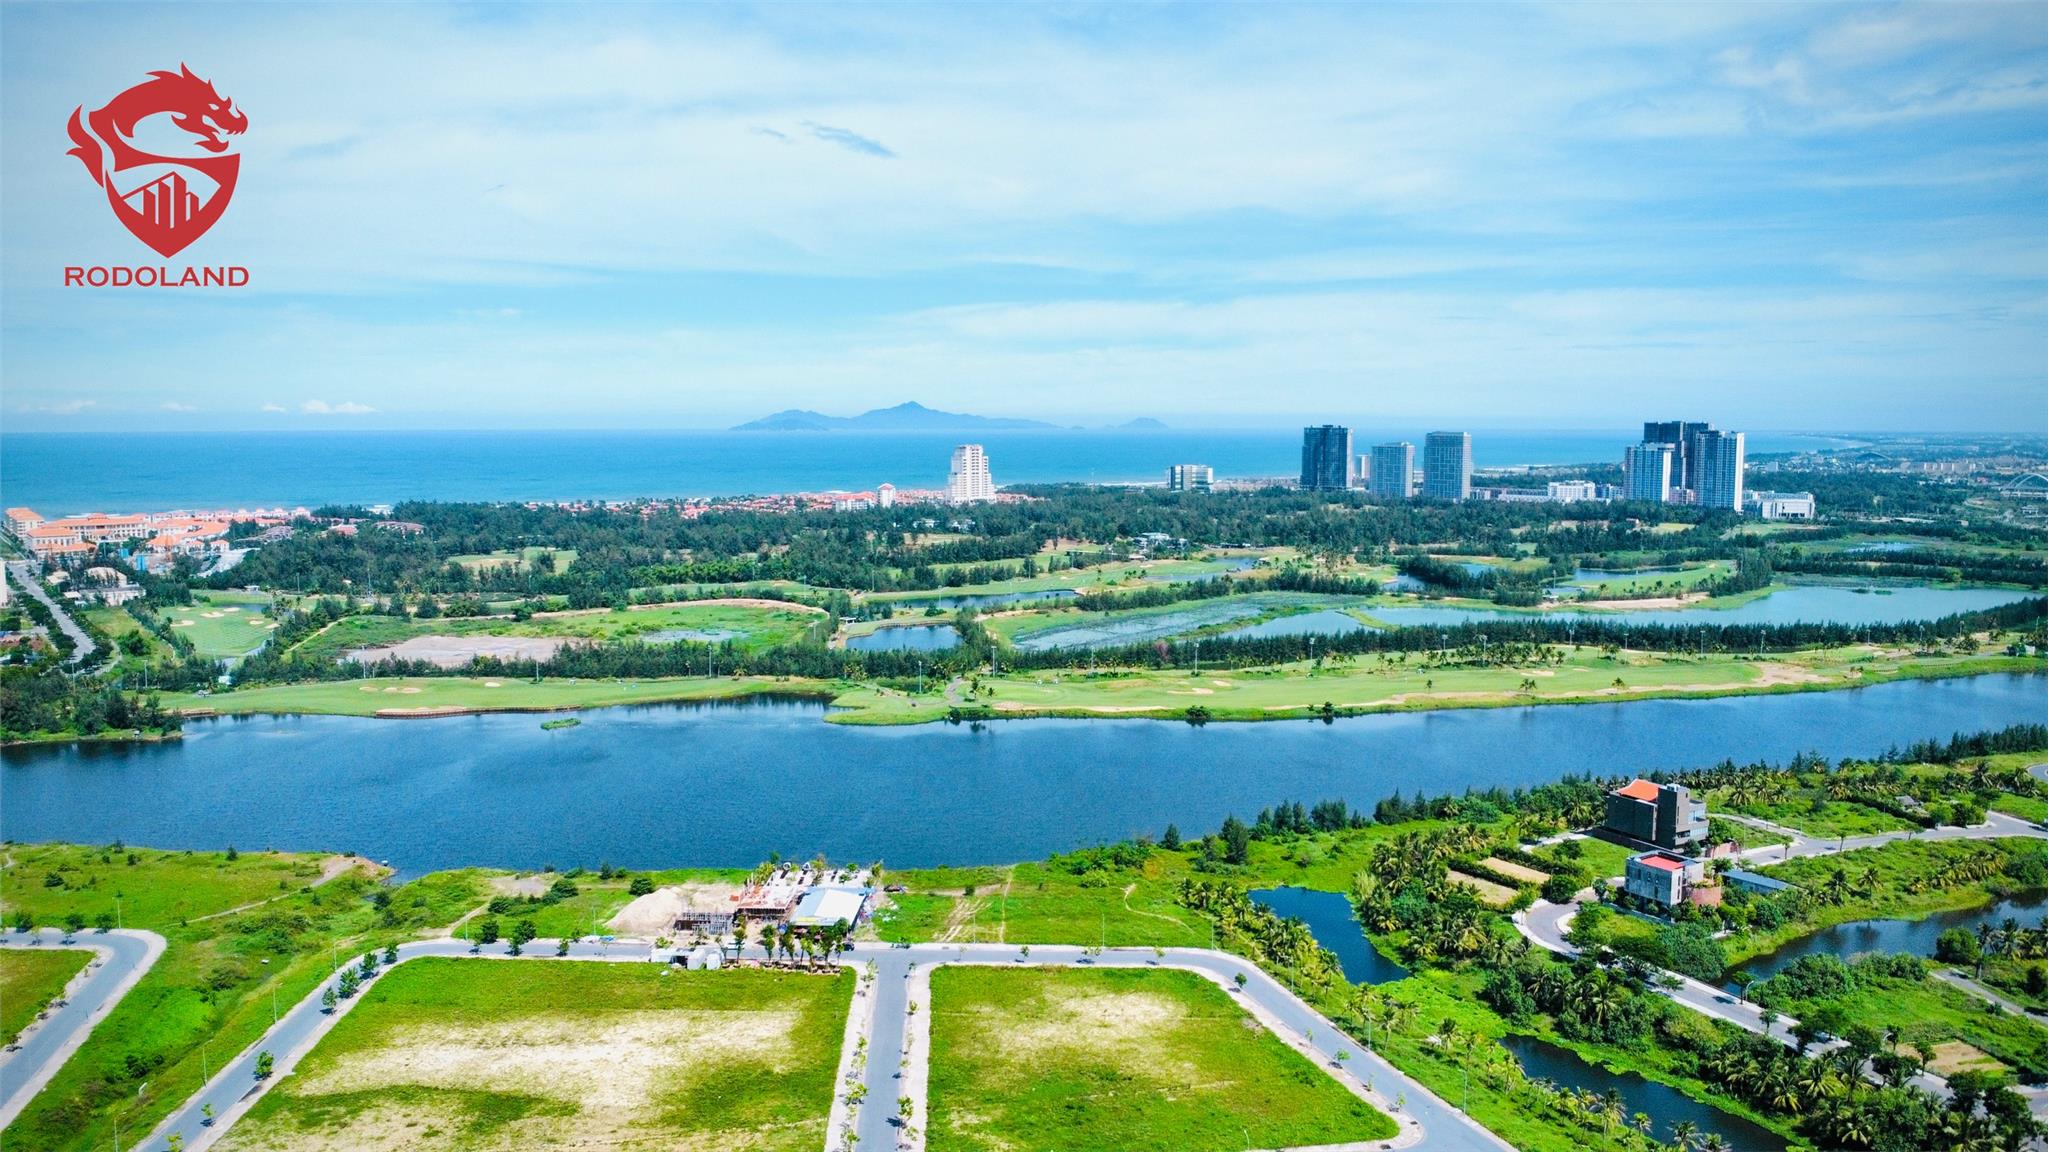 Mua bán nhà đất FPT City Đà Nẵng – Liên hệ BĐS Rồng Đỏ 0905.31.89.88 2